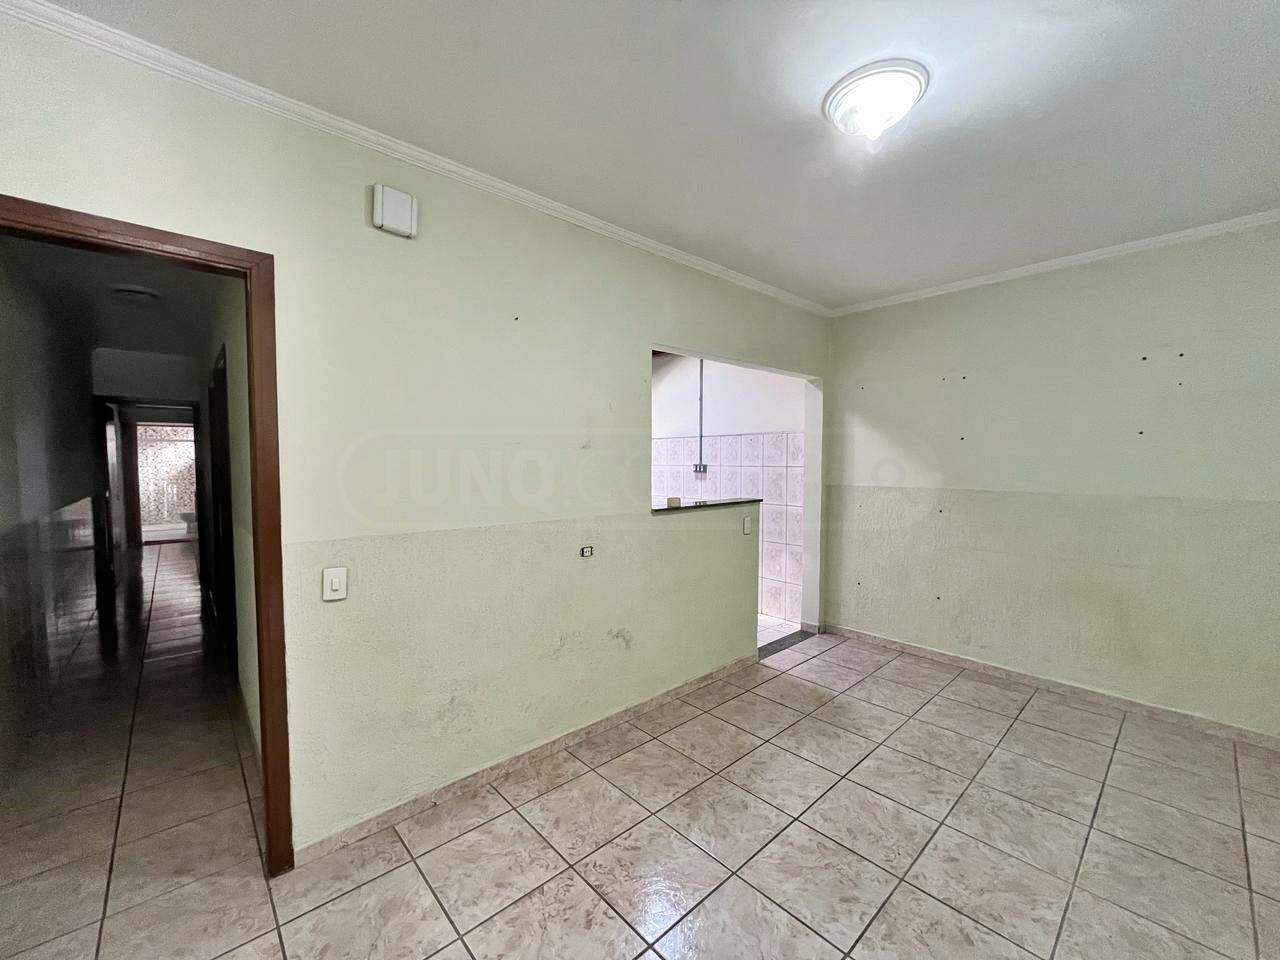 Casa à venda, 2 quartos, sendo 1 suíte, 1 vaga, no bairro Santa Terezinha em Piracicaba - SP